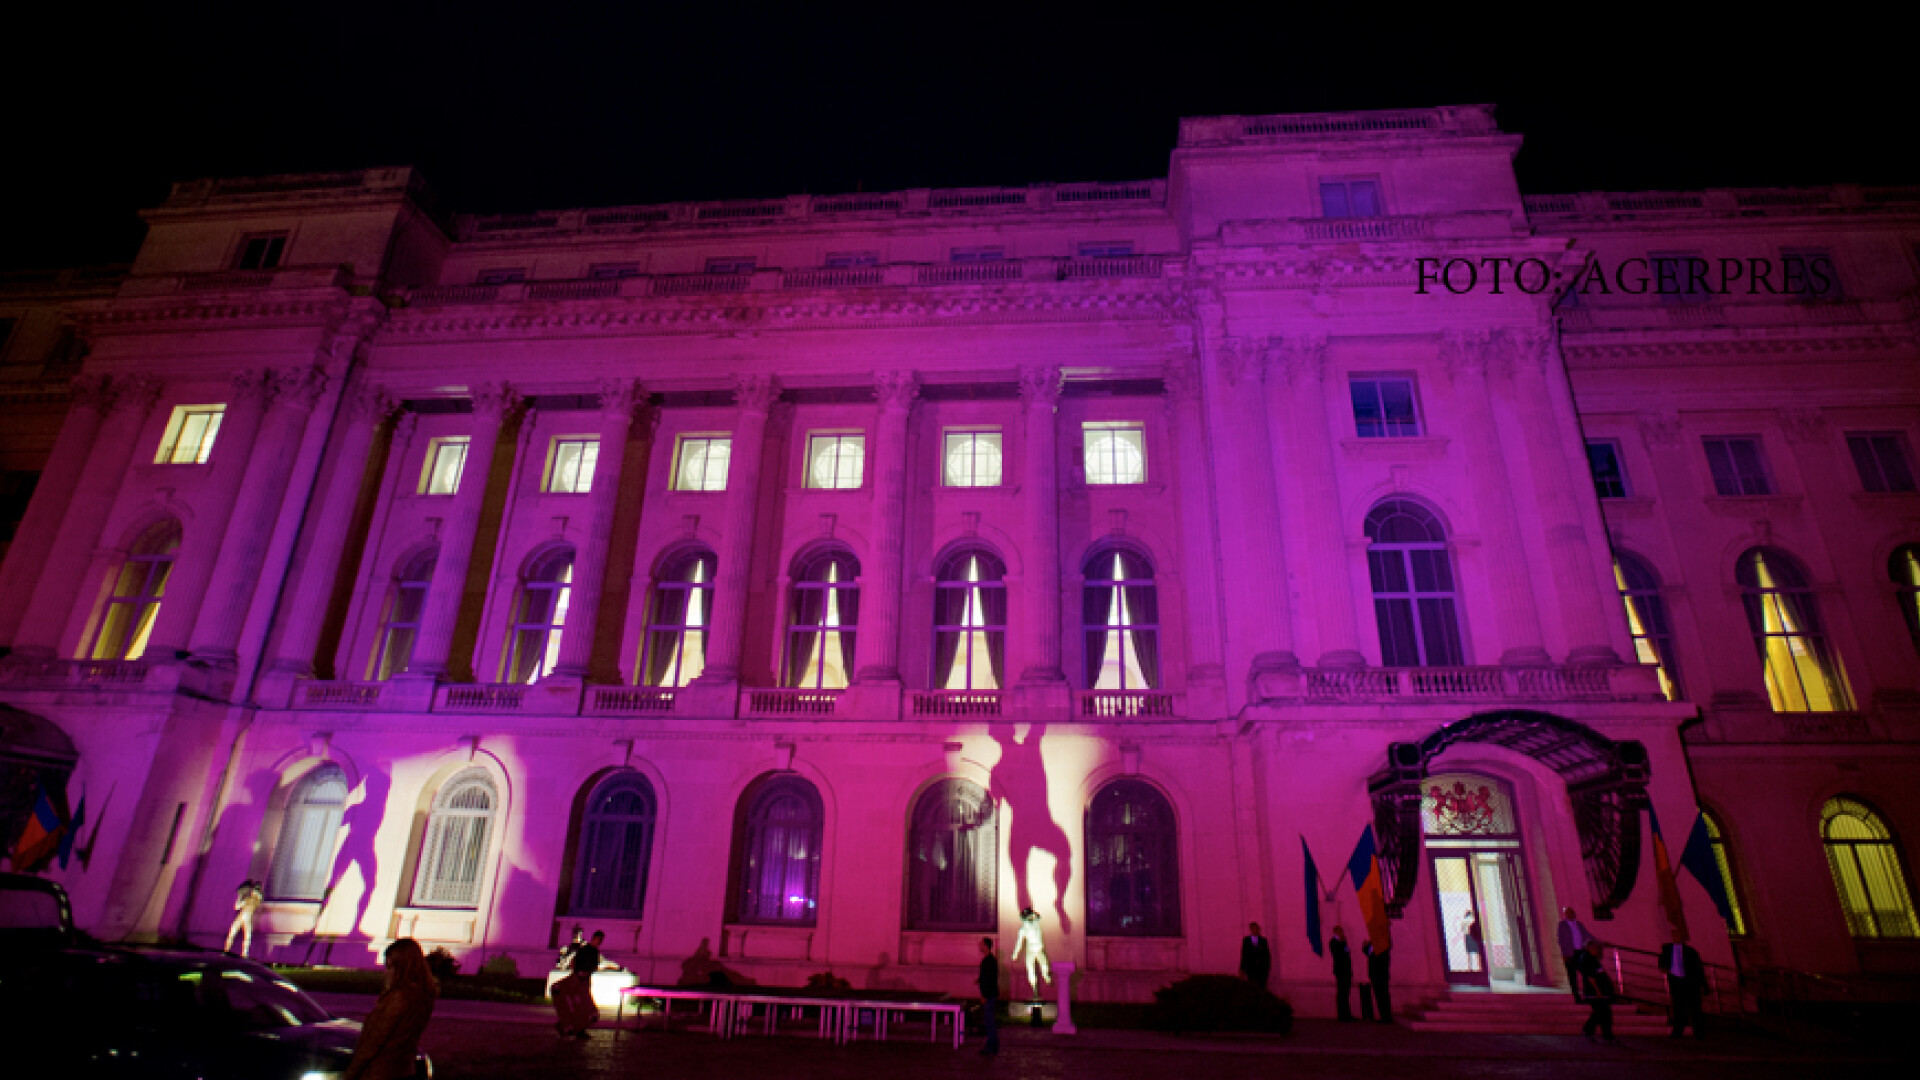 Cea de-a XVI-a editie a Iluminarii in roz, cu ocazia Zilei Nationale de Lupta impotriva Cancerului de San, organizata de Fundatia Renasterea, la Muzeul National de Arta al Romaniei